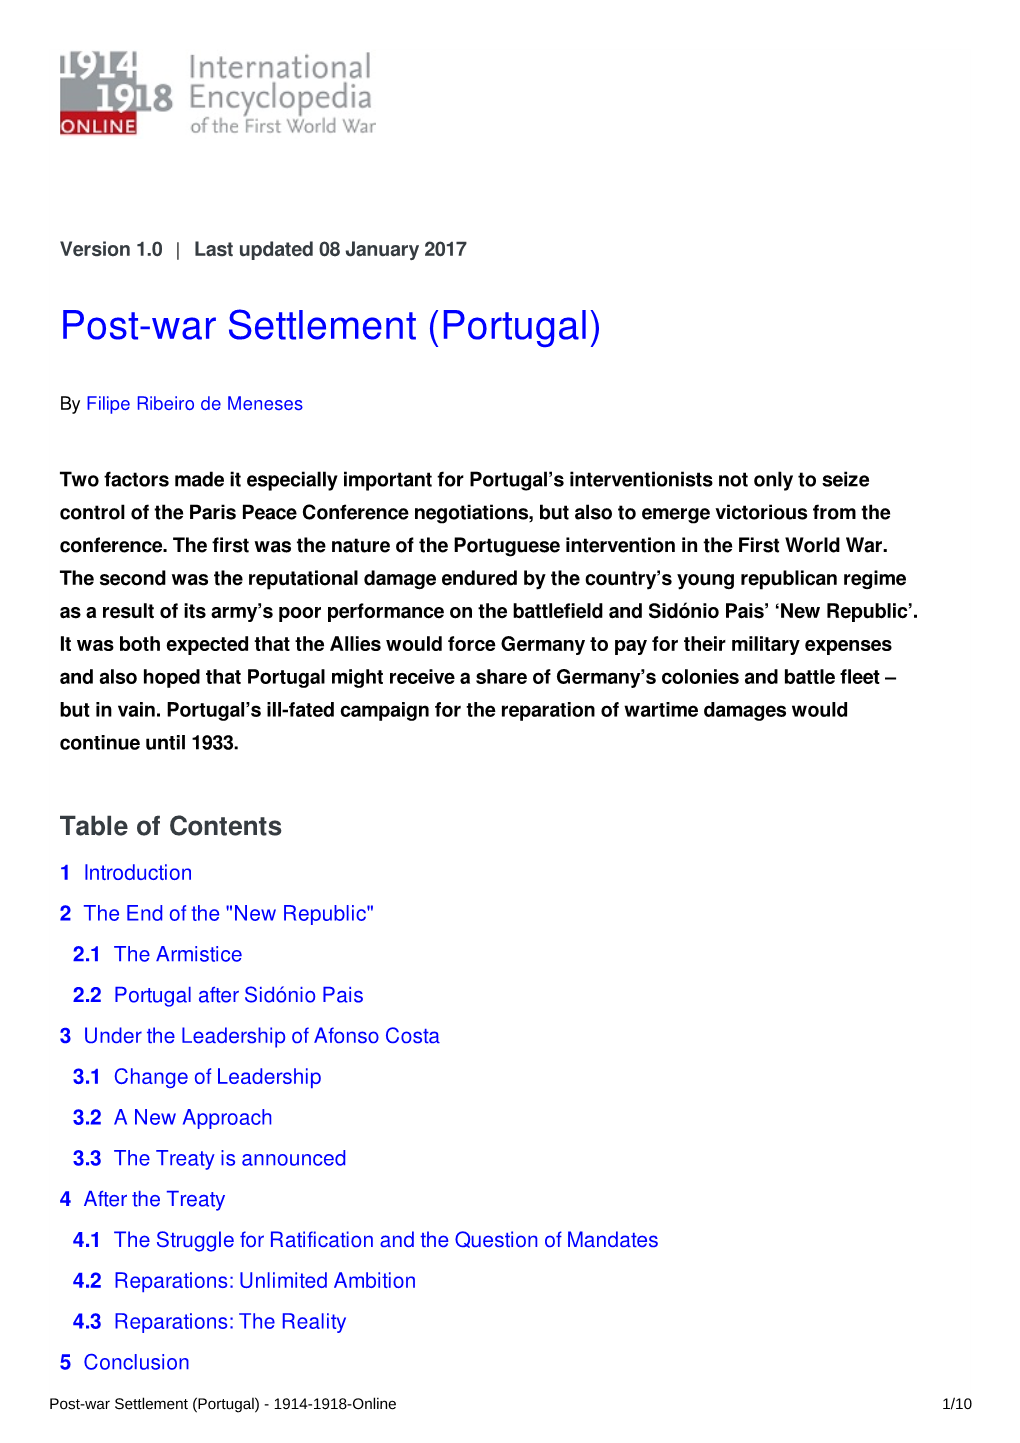 Post-War Settlement (Portugal)